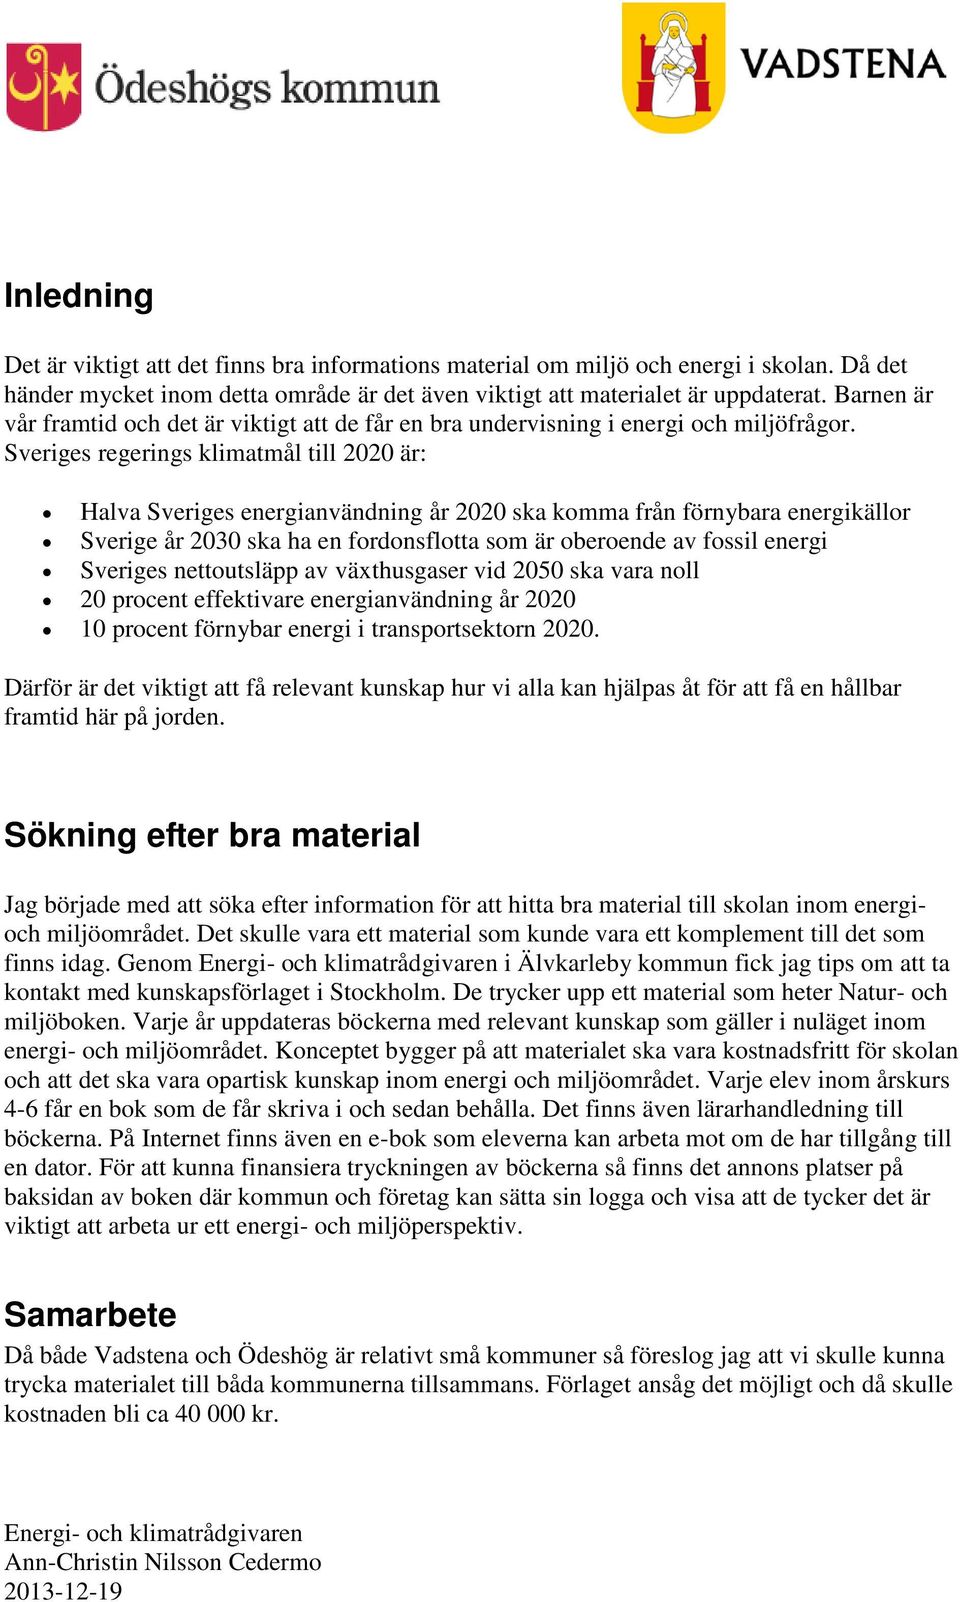 Sveriges regerings klimatmål till 2020 är: Halva Sveriges energianvändning år 2020 ska komma från förnybara energikällor Sverige år 2030 ska ha en fordonsflotta som är oberoende av fossil energi